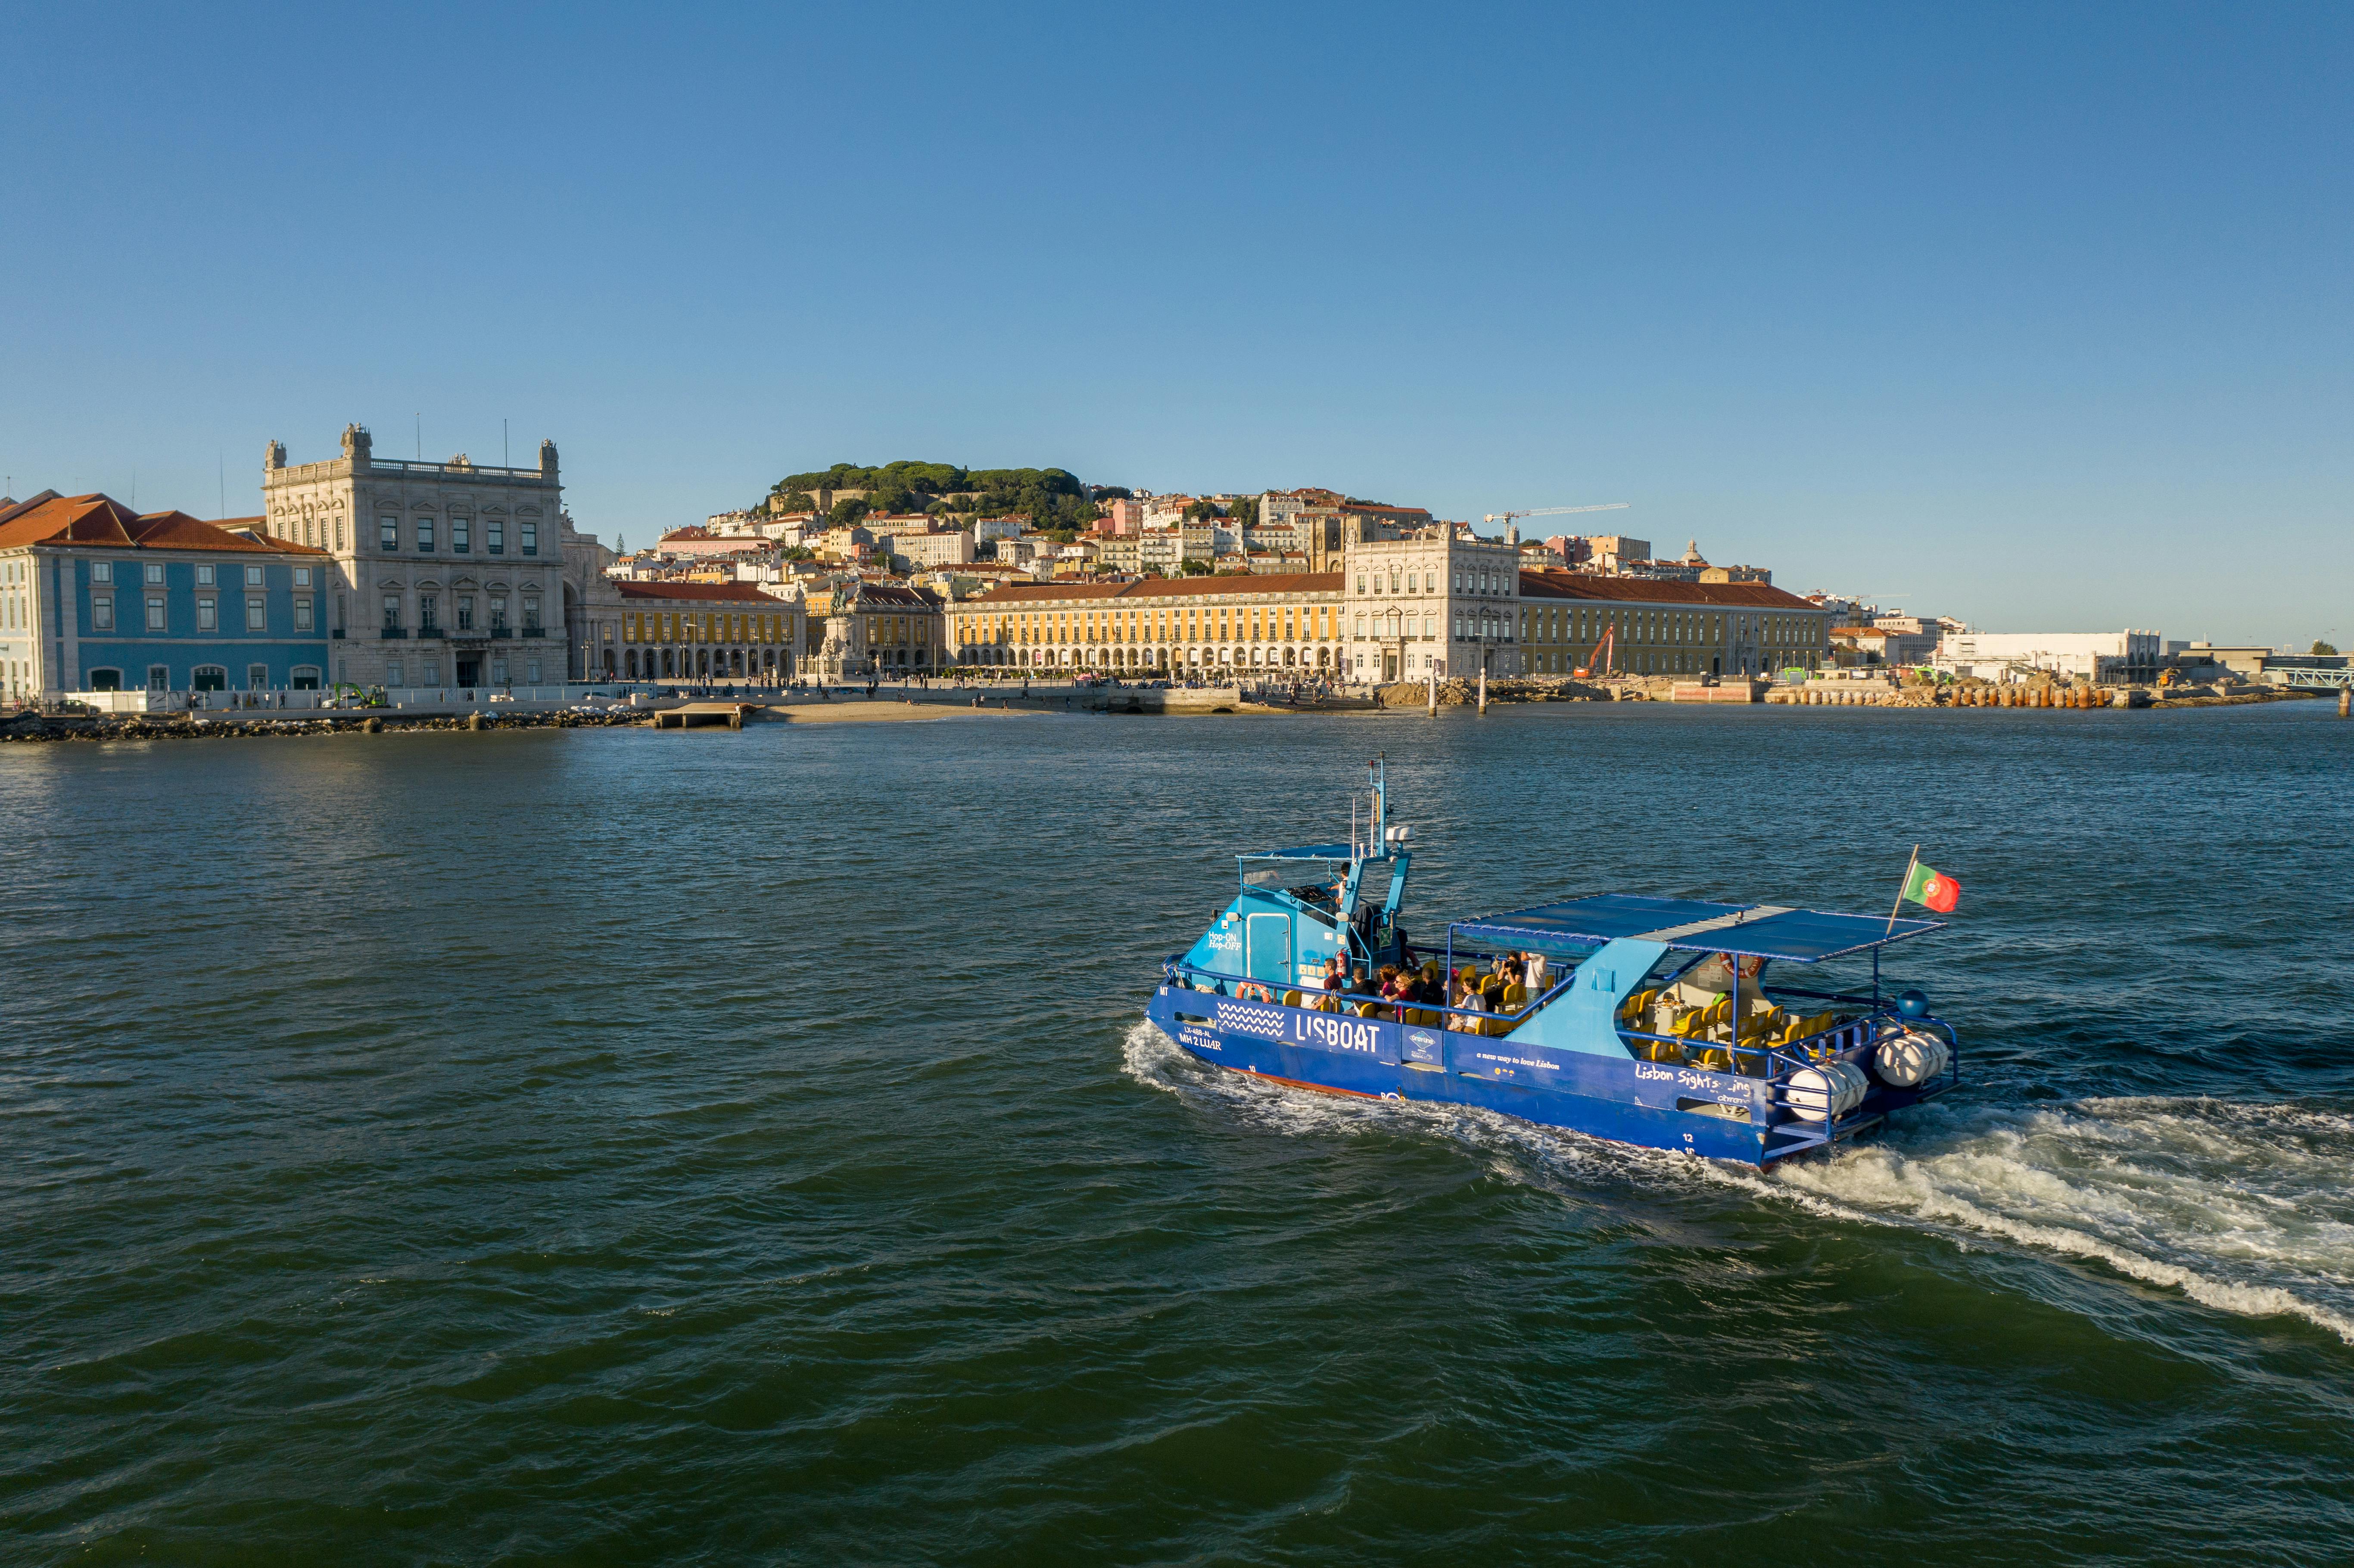 Billets de bateau à arrêts multiples valables 48 heures à Lisbonne